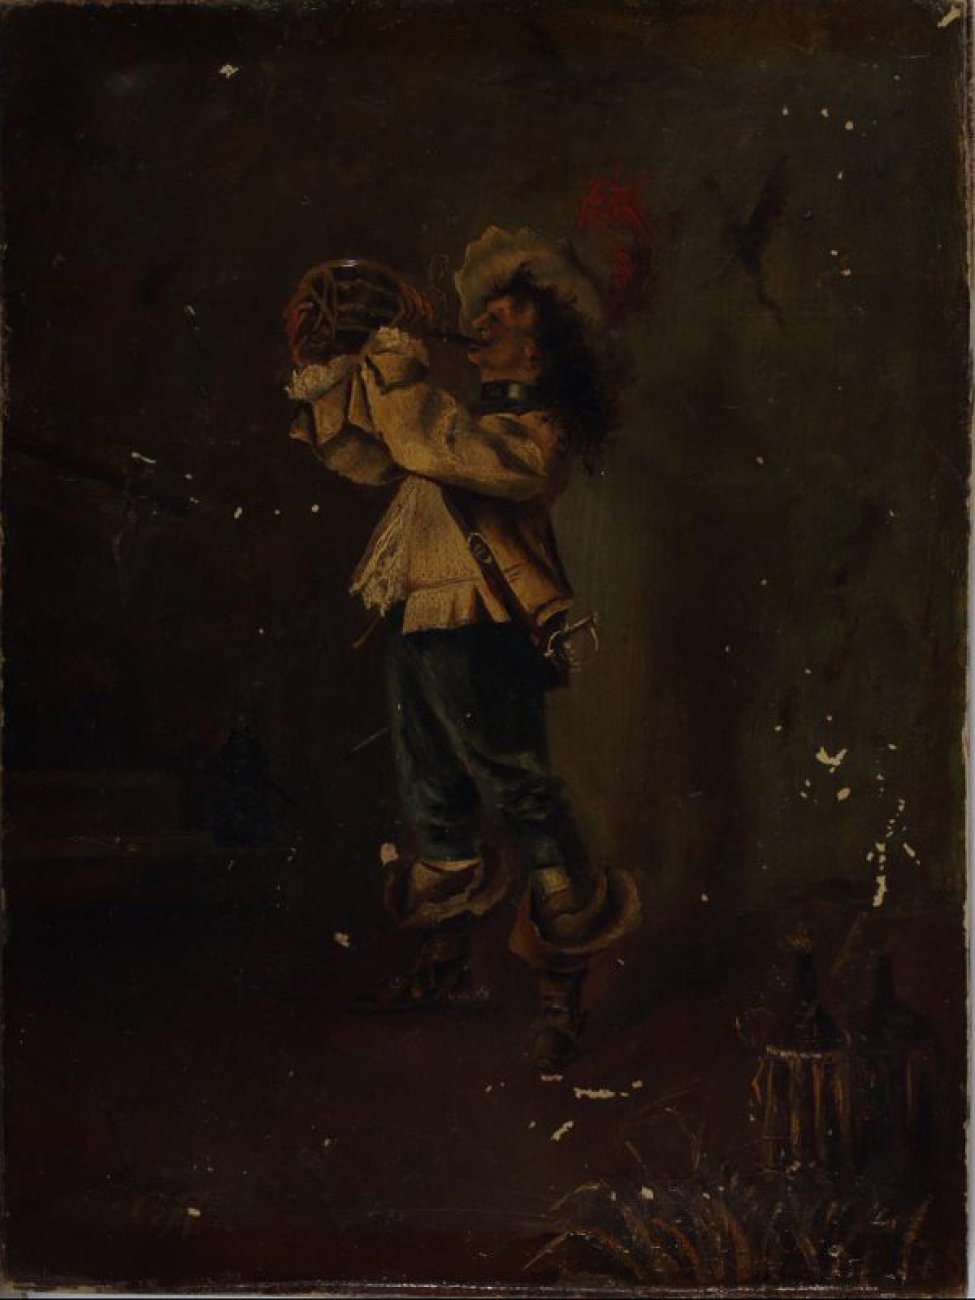 Изображен мужчина в рост (лицо в профиль влево), в шляпе с пером, в светлой одежде, в сапогах с ботфортами (спущенных), пьющий вино.